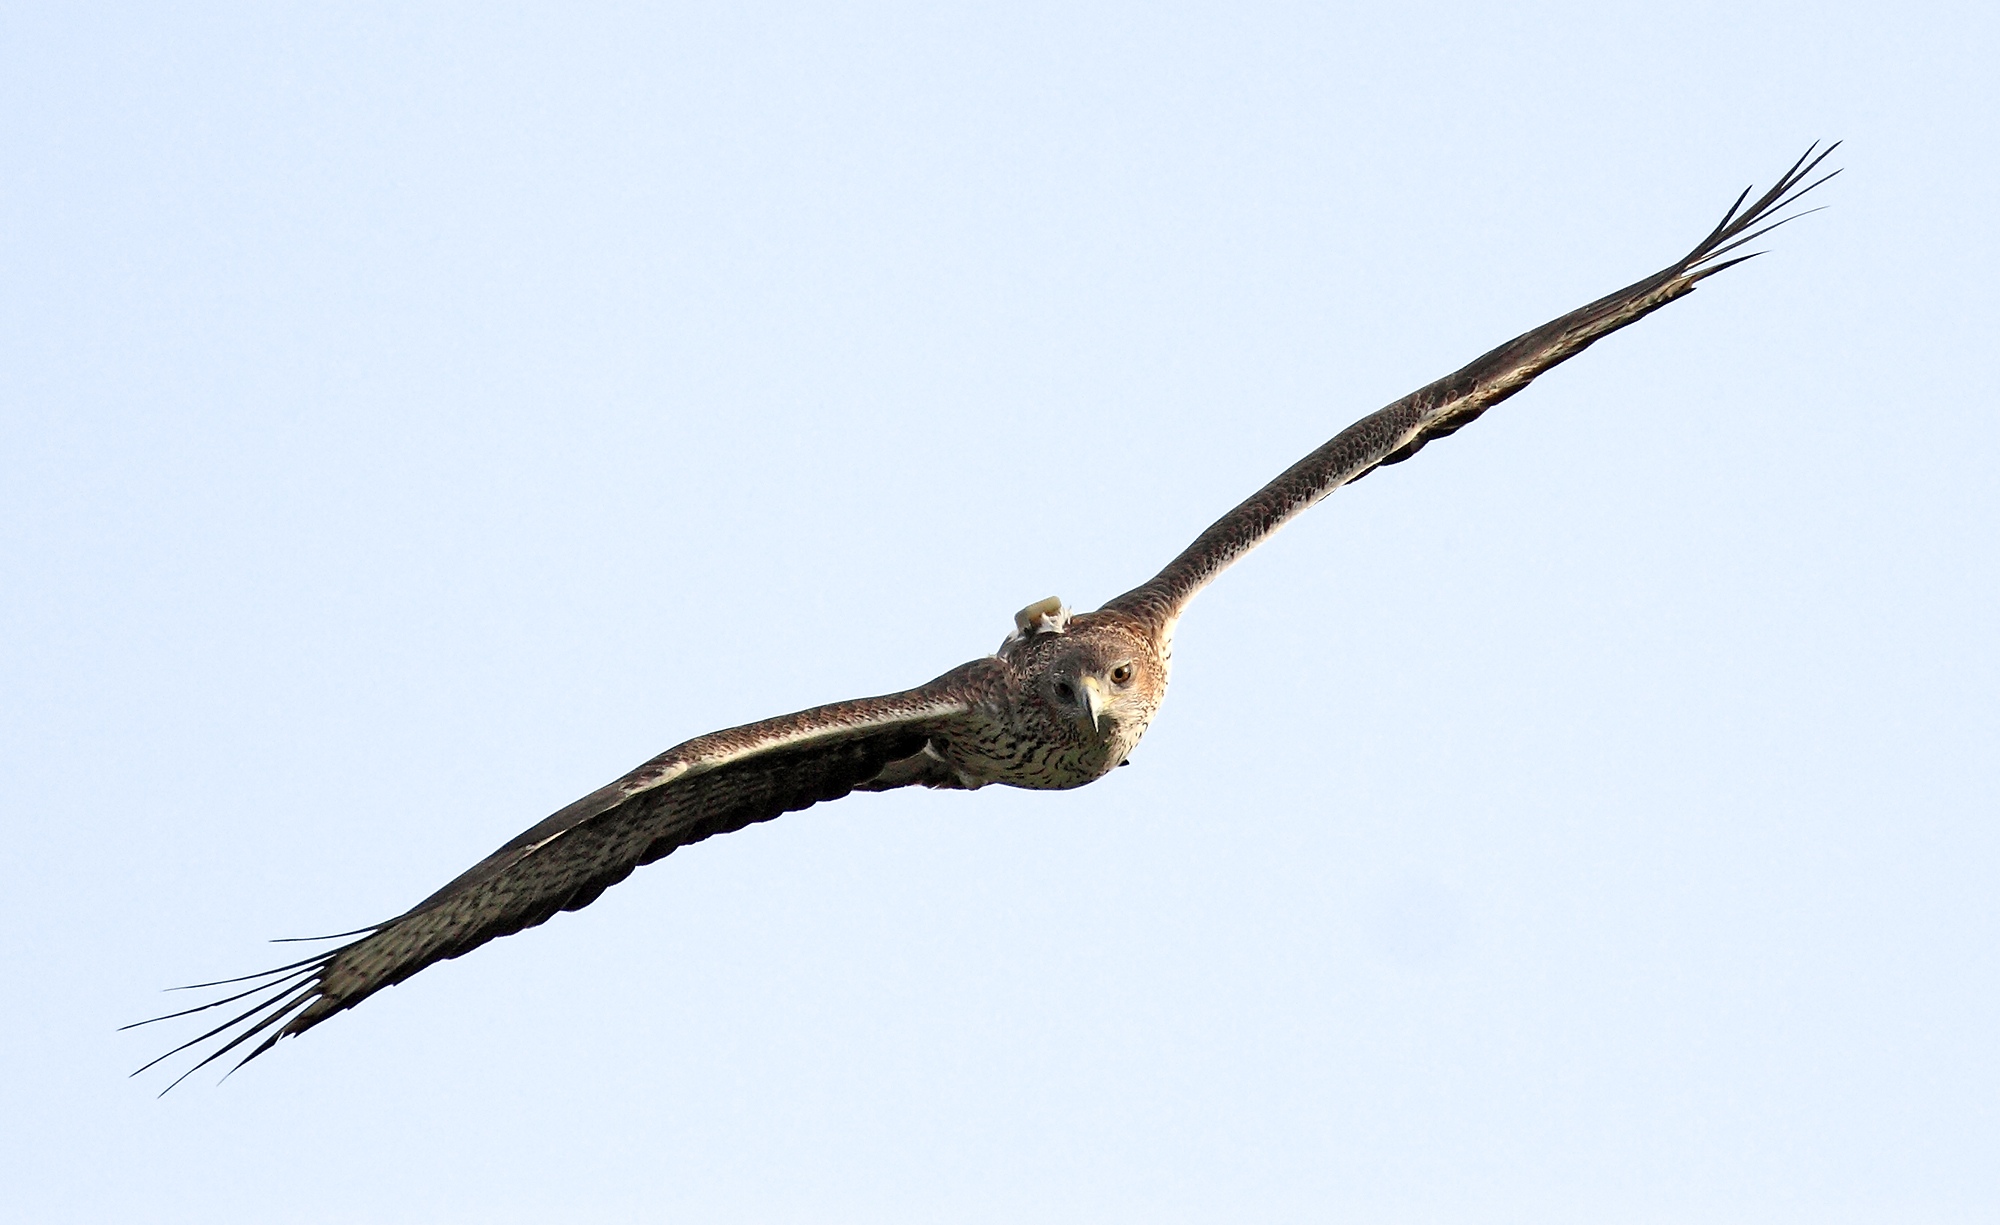 Una águila de Bonelli reproductora reintroducida vuela en la Comunidad de Madrid, con su emisor GPS visible. Imagen: Sergio de la Fuente / Grefa